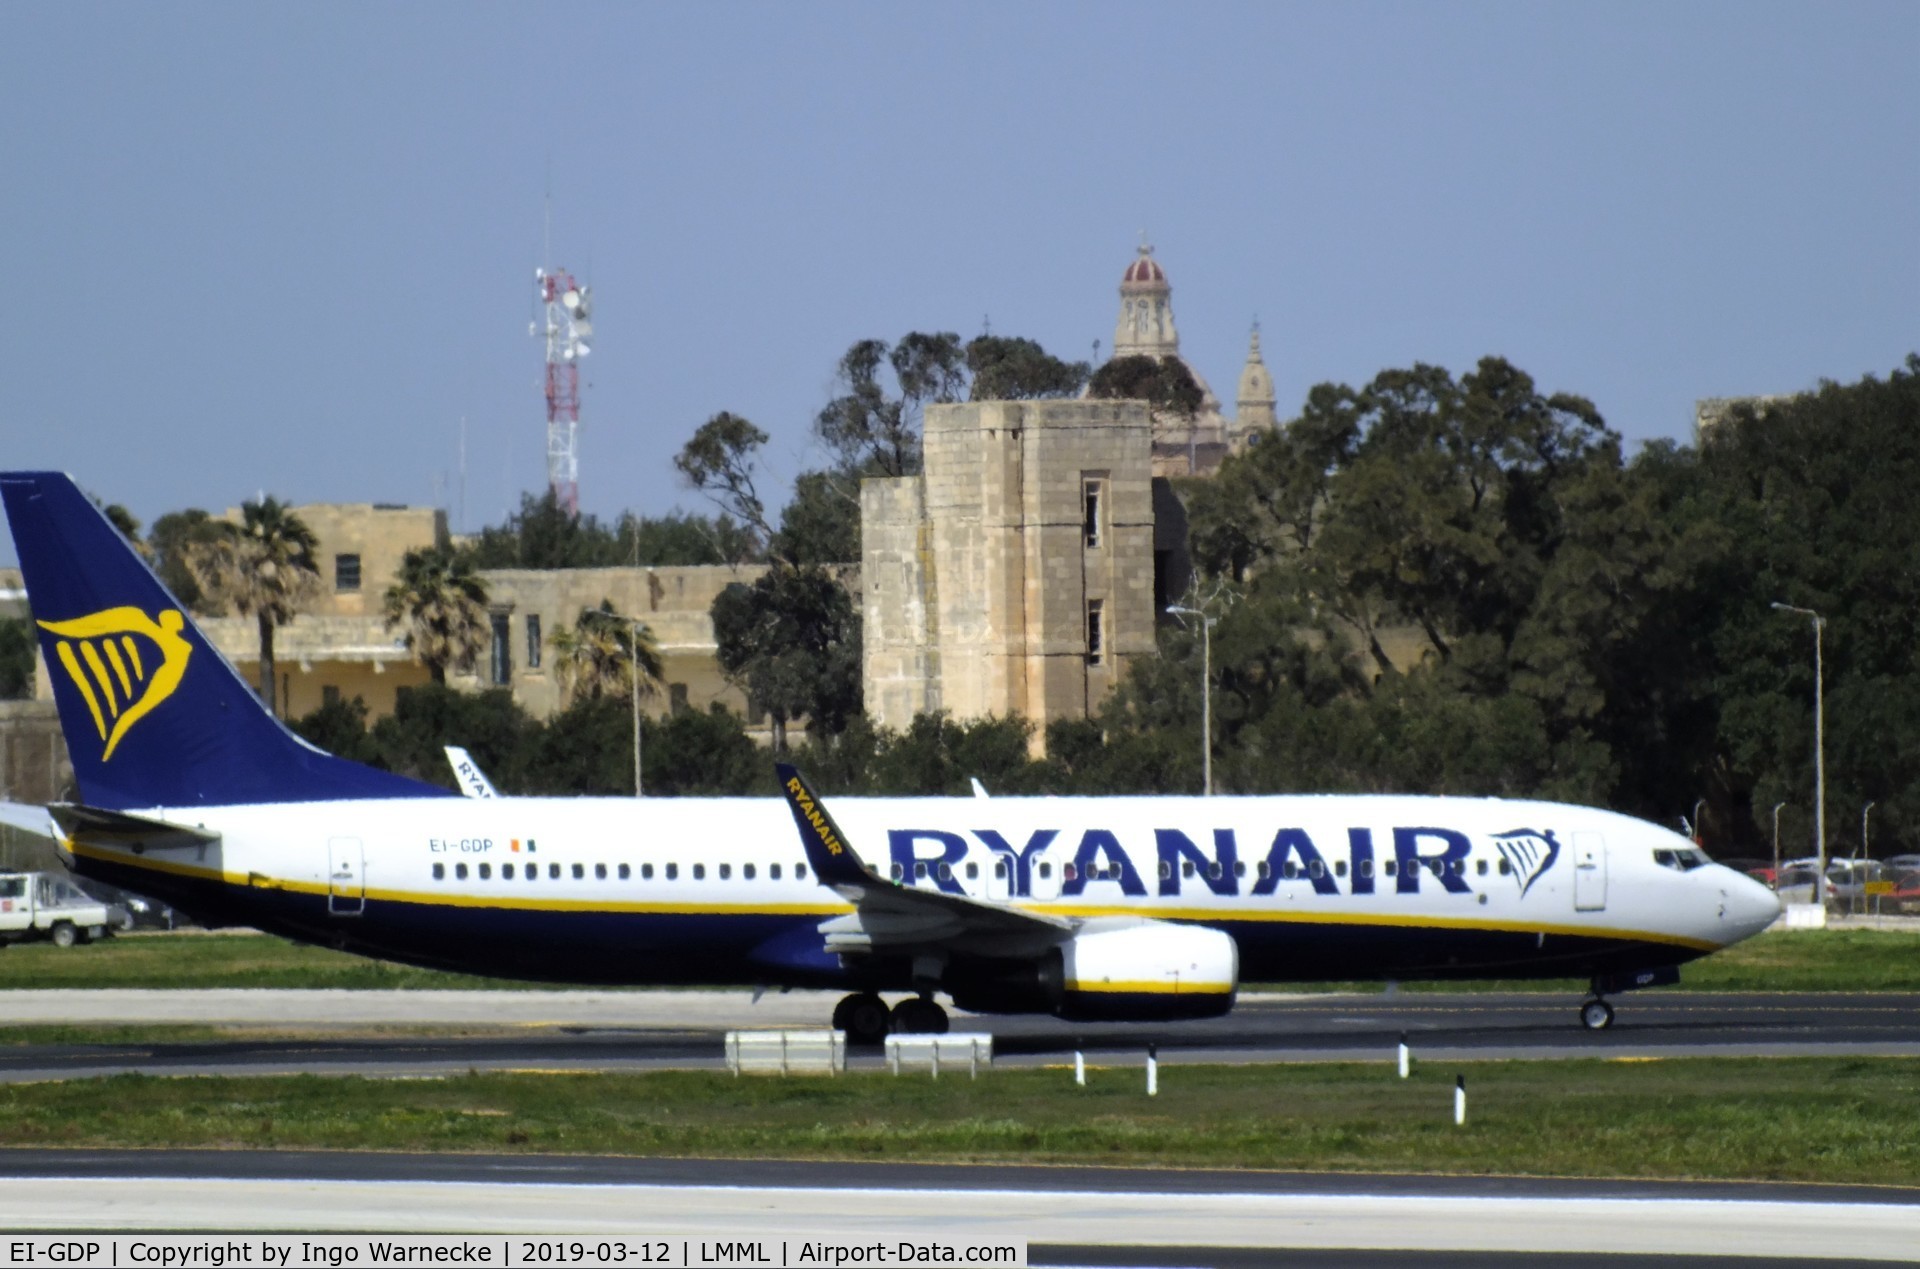 EI-GDP, 2017 Boeing 737-800 C/N 44813, Boeing 737-800 of Ryanair at Malta International Airport, Luqa